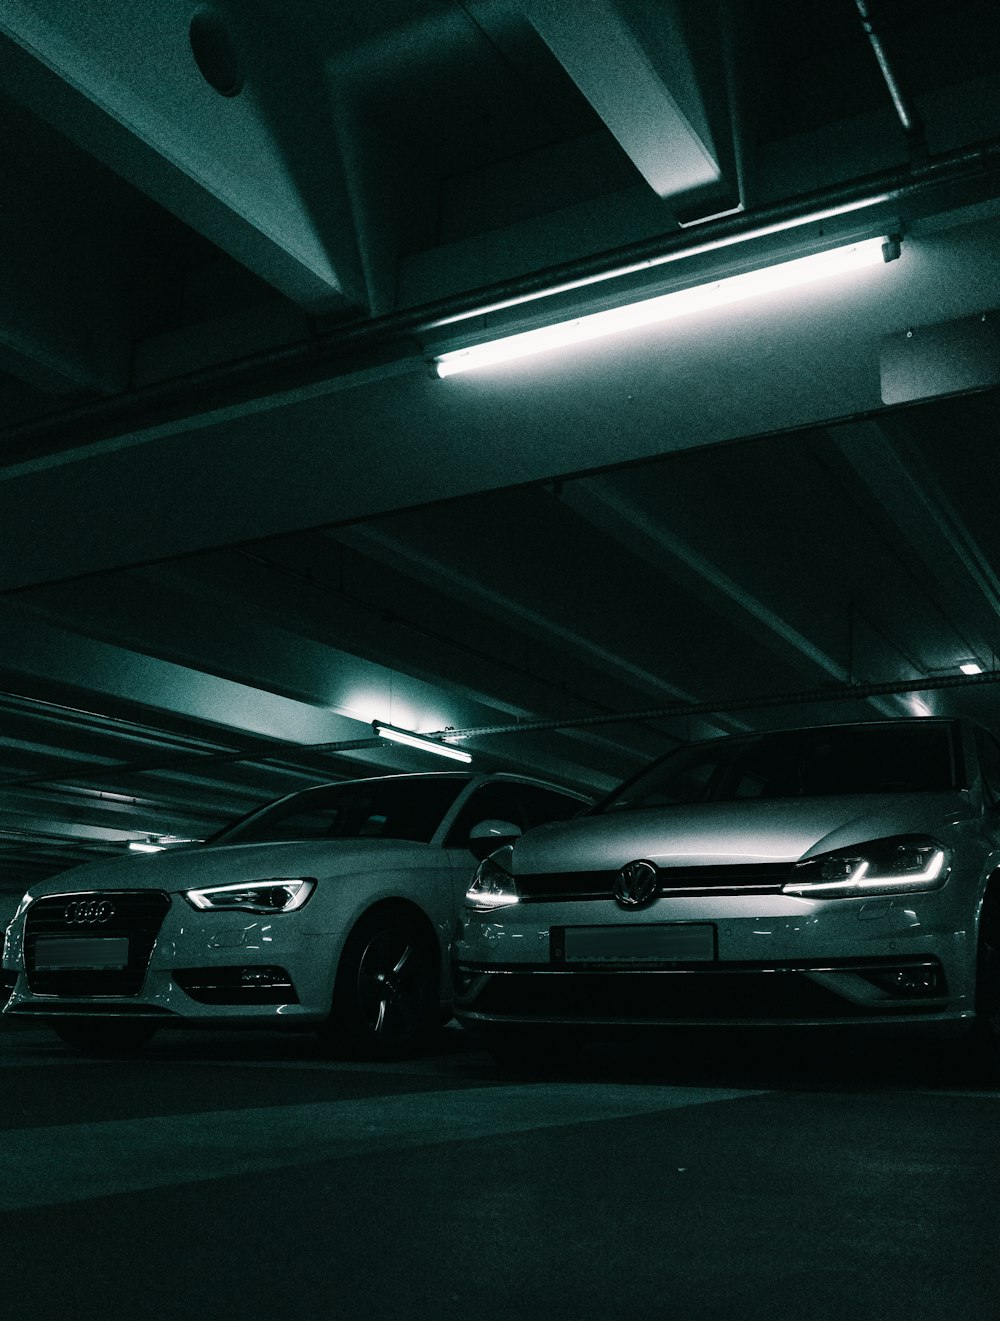 silver sedan parked in parking lot